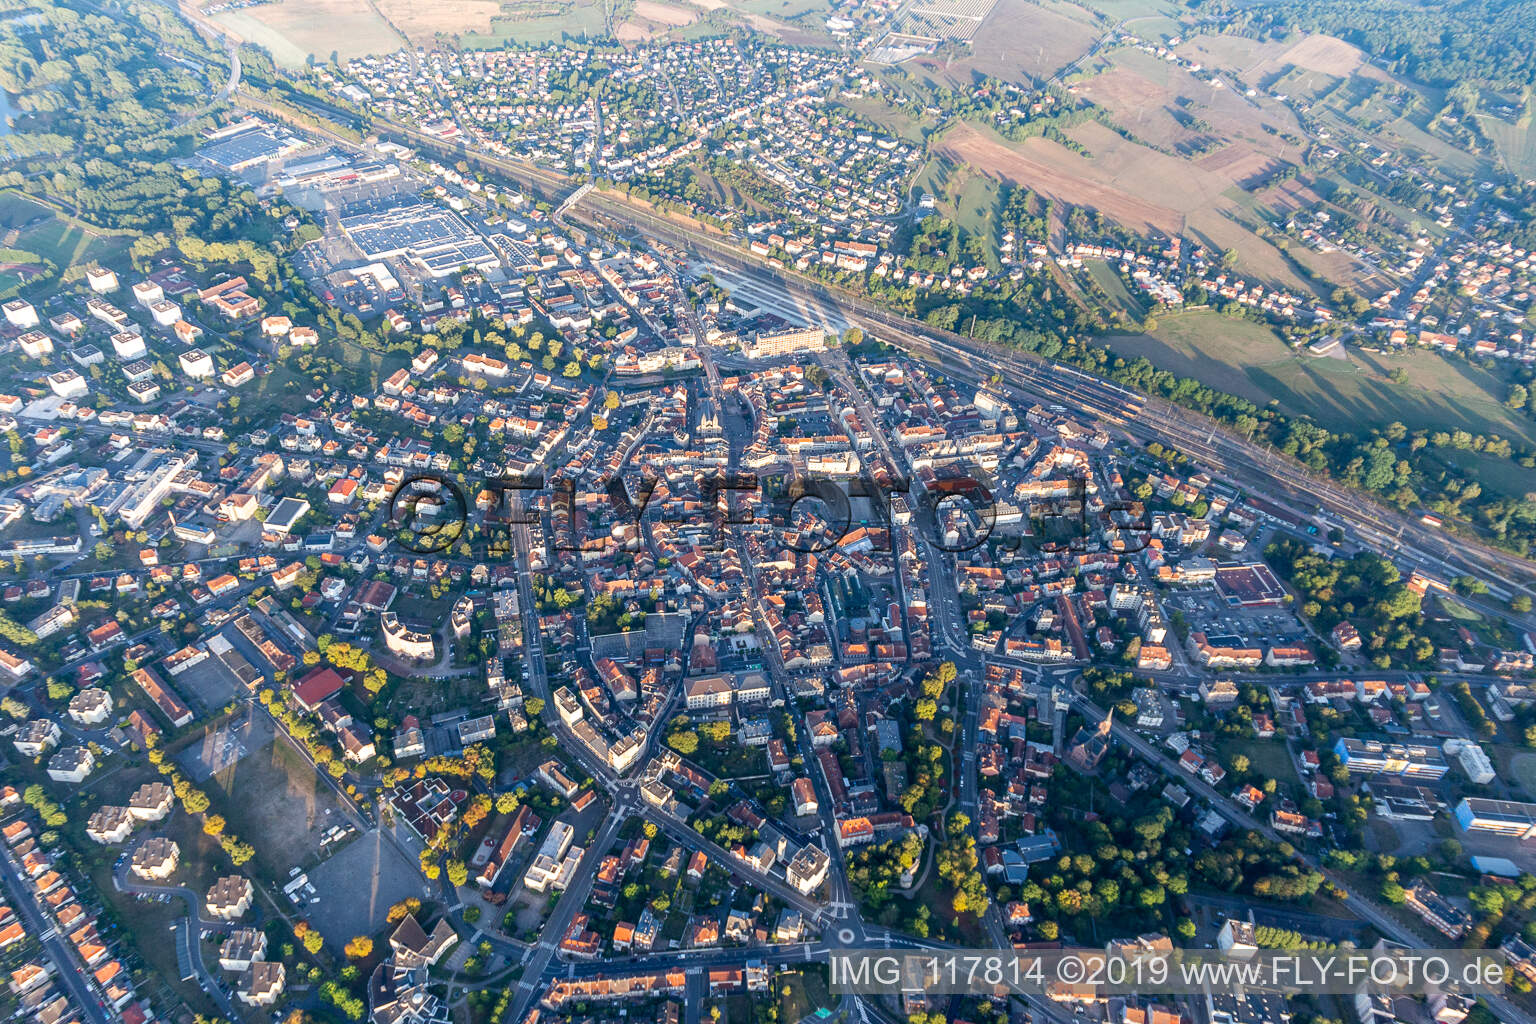 Vue aérienne de Sarrebourg dans le département Moselle, France